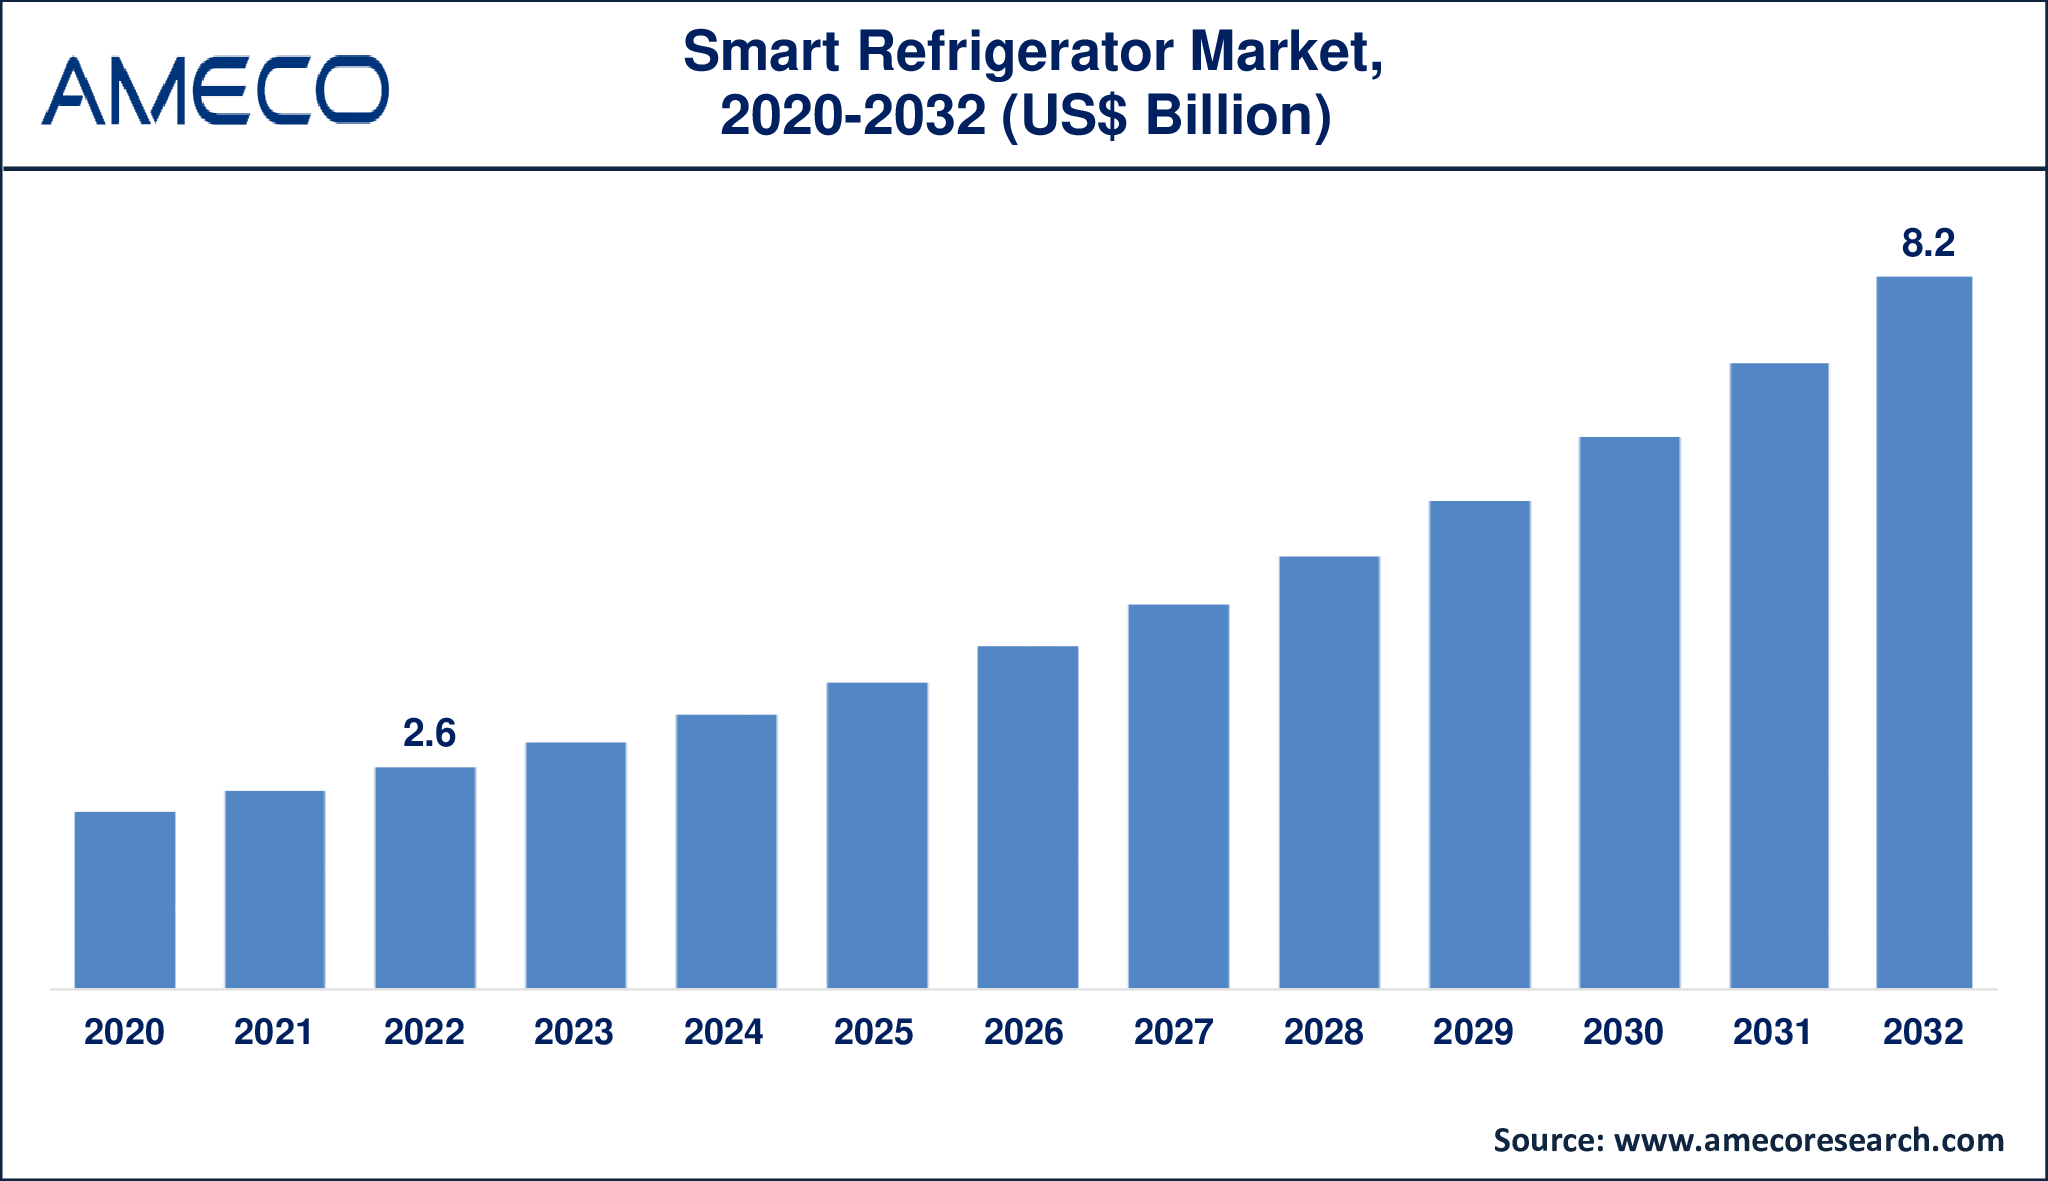 Smart Refrigerator Market Dynamics